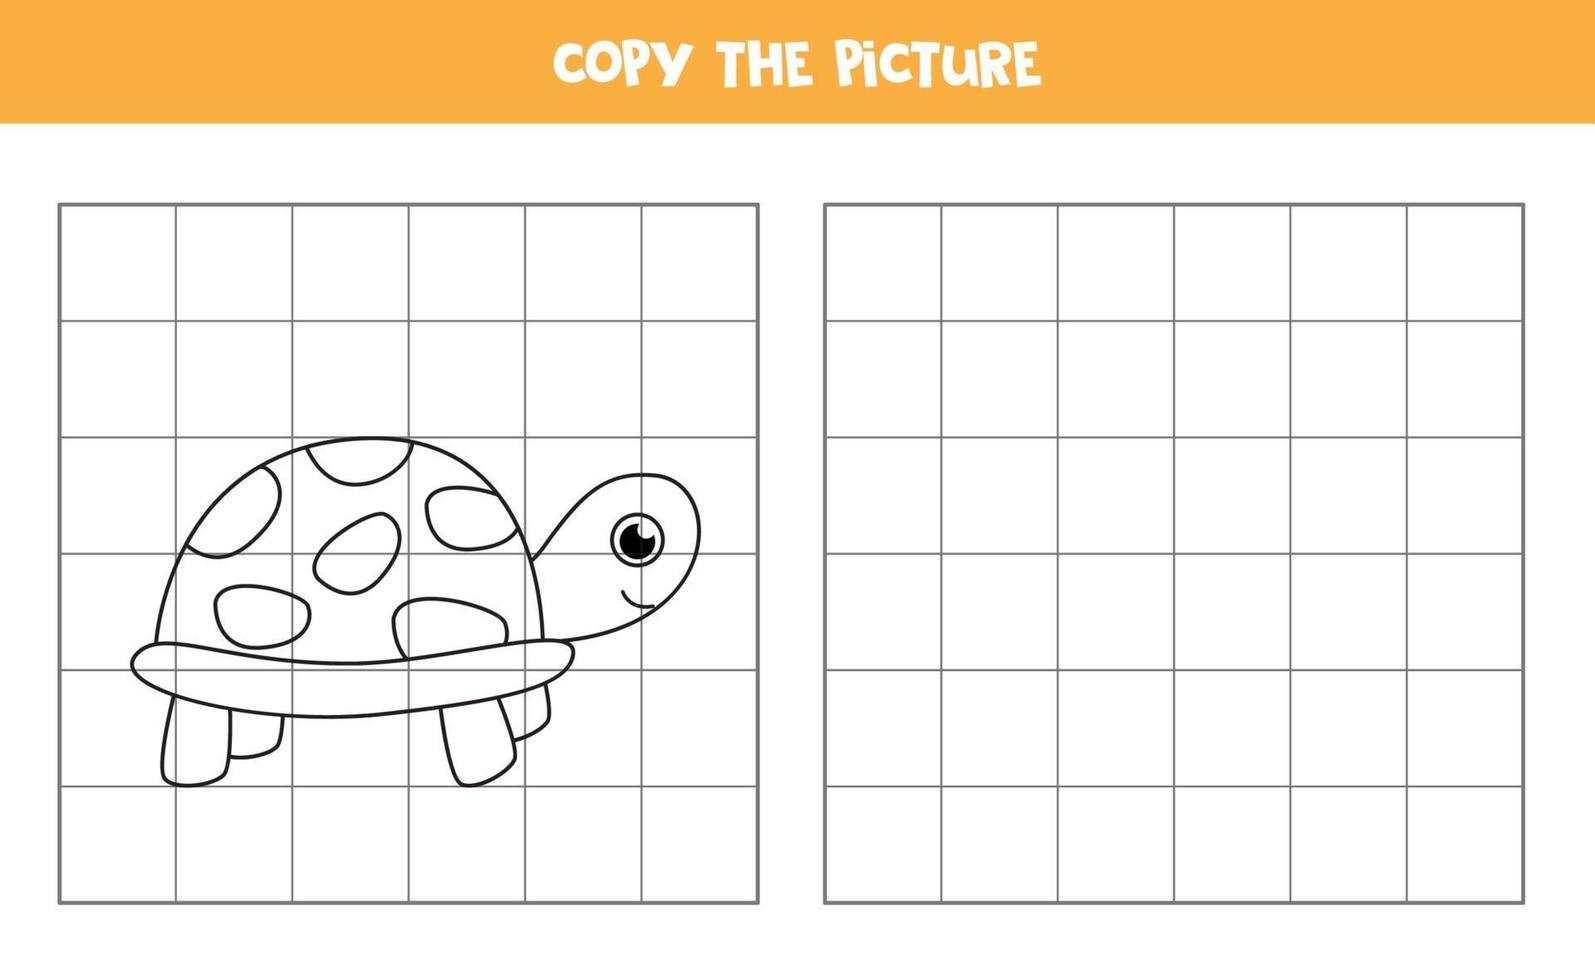 Copie la imagen de la linda tortuga. juego educativo para niños. vector